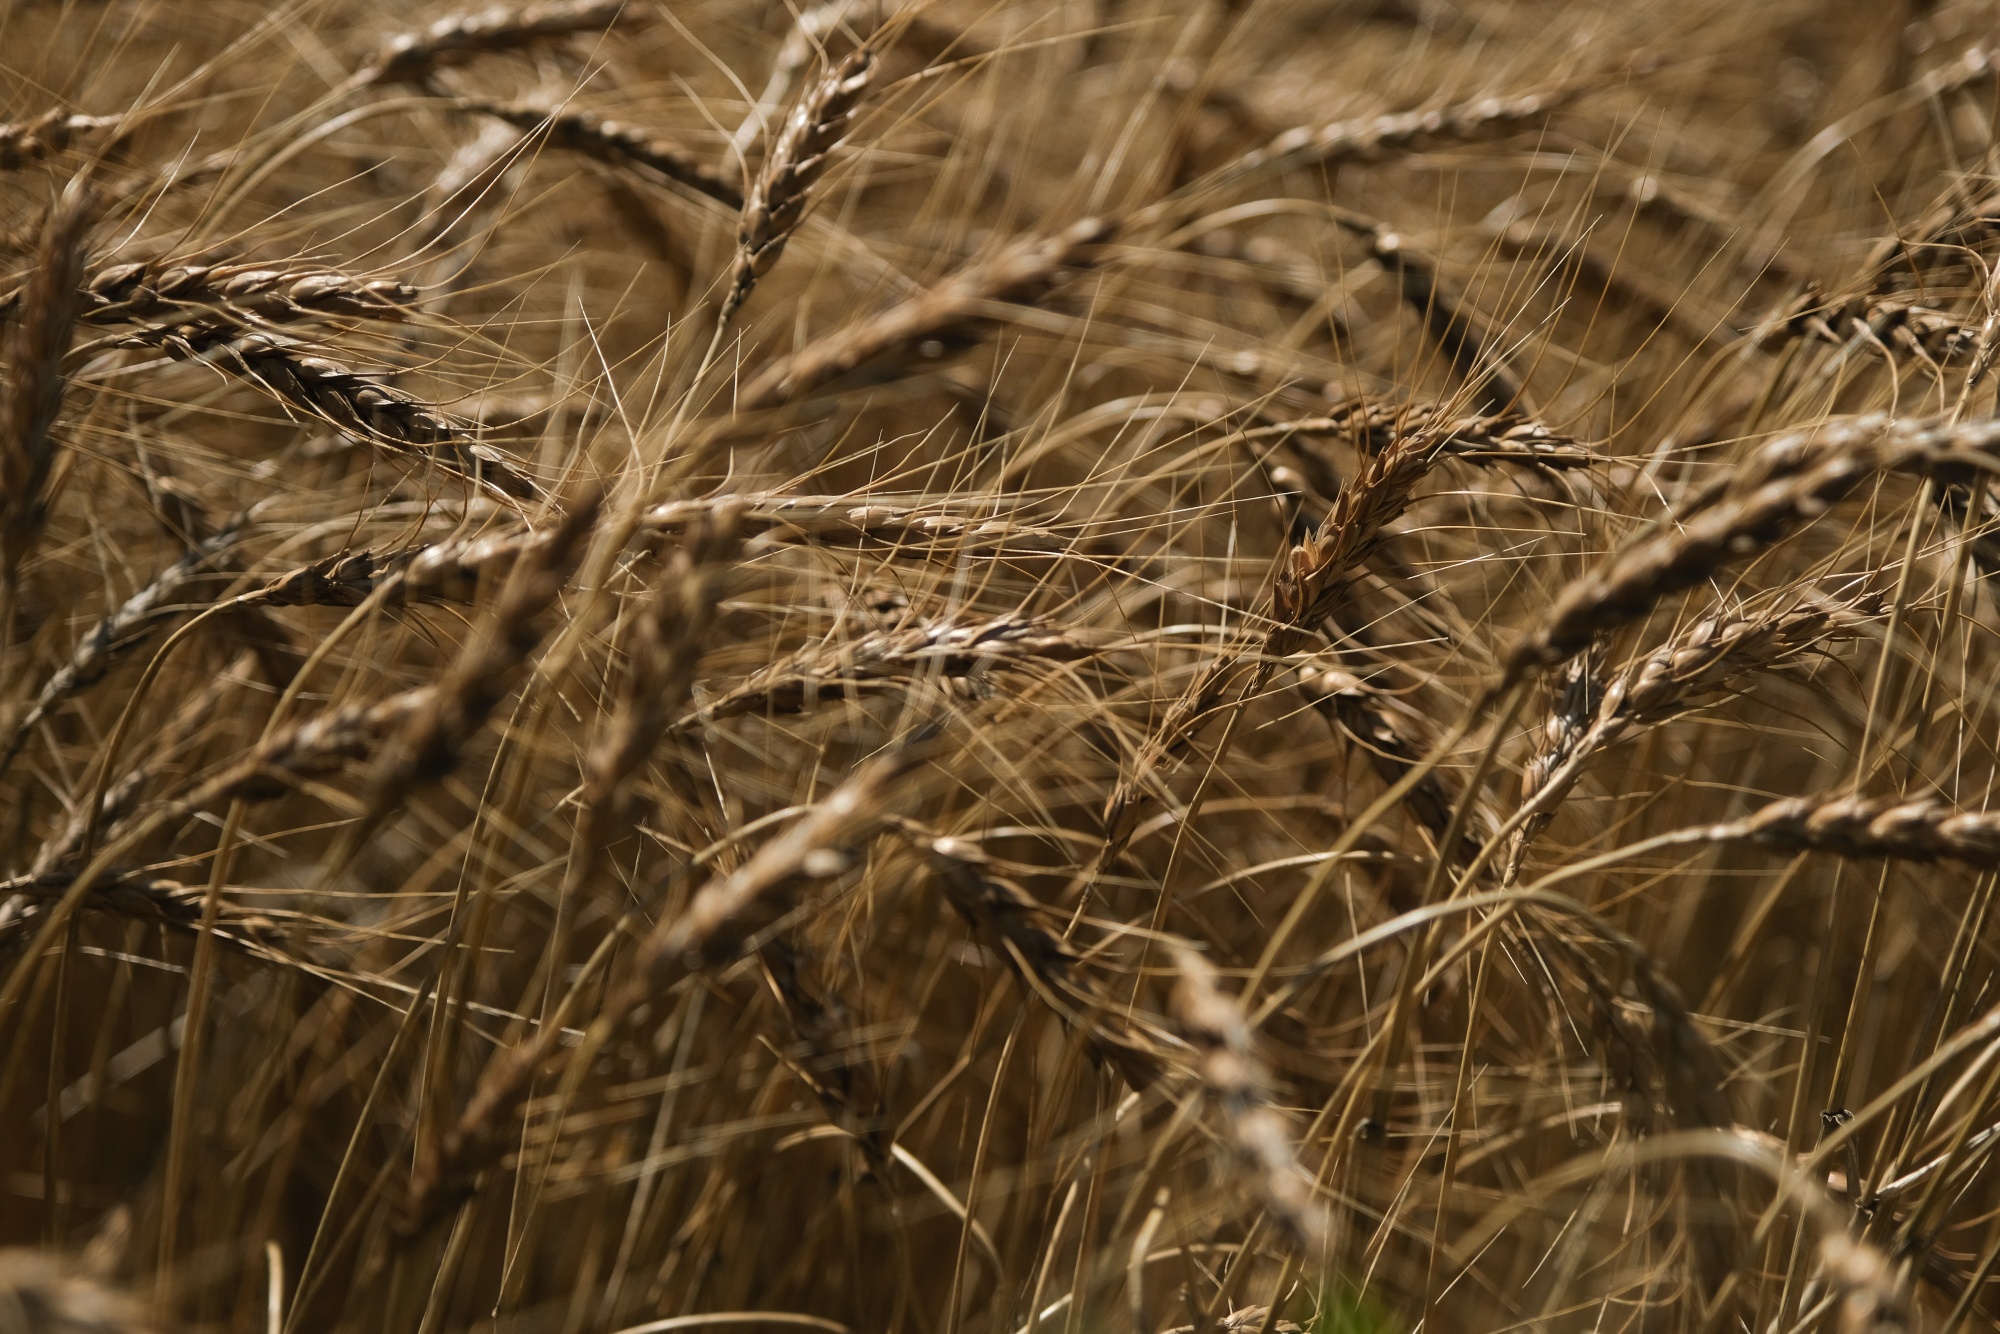 Wheat ready for harvesting in&nbsp;Kansas, US, in June.&nbsp;